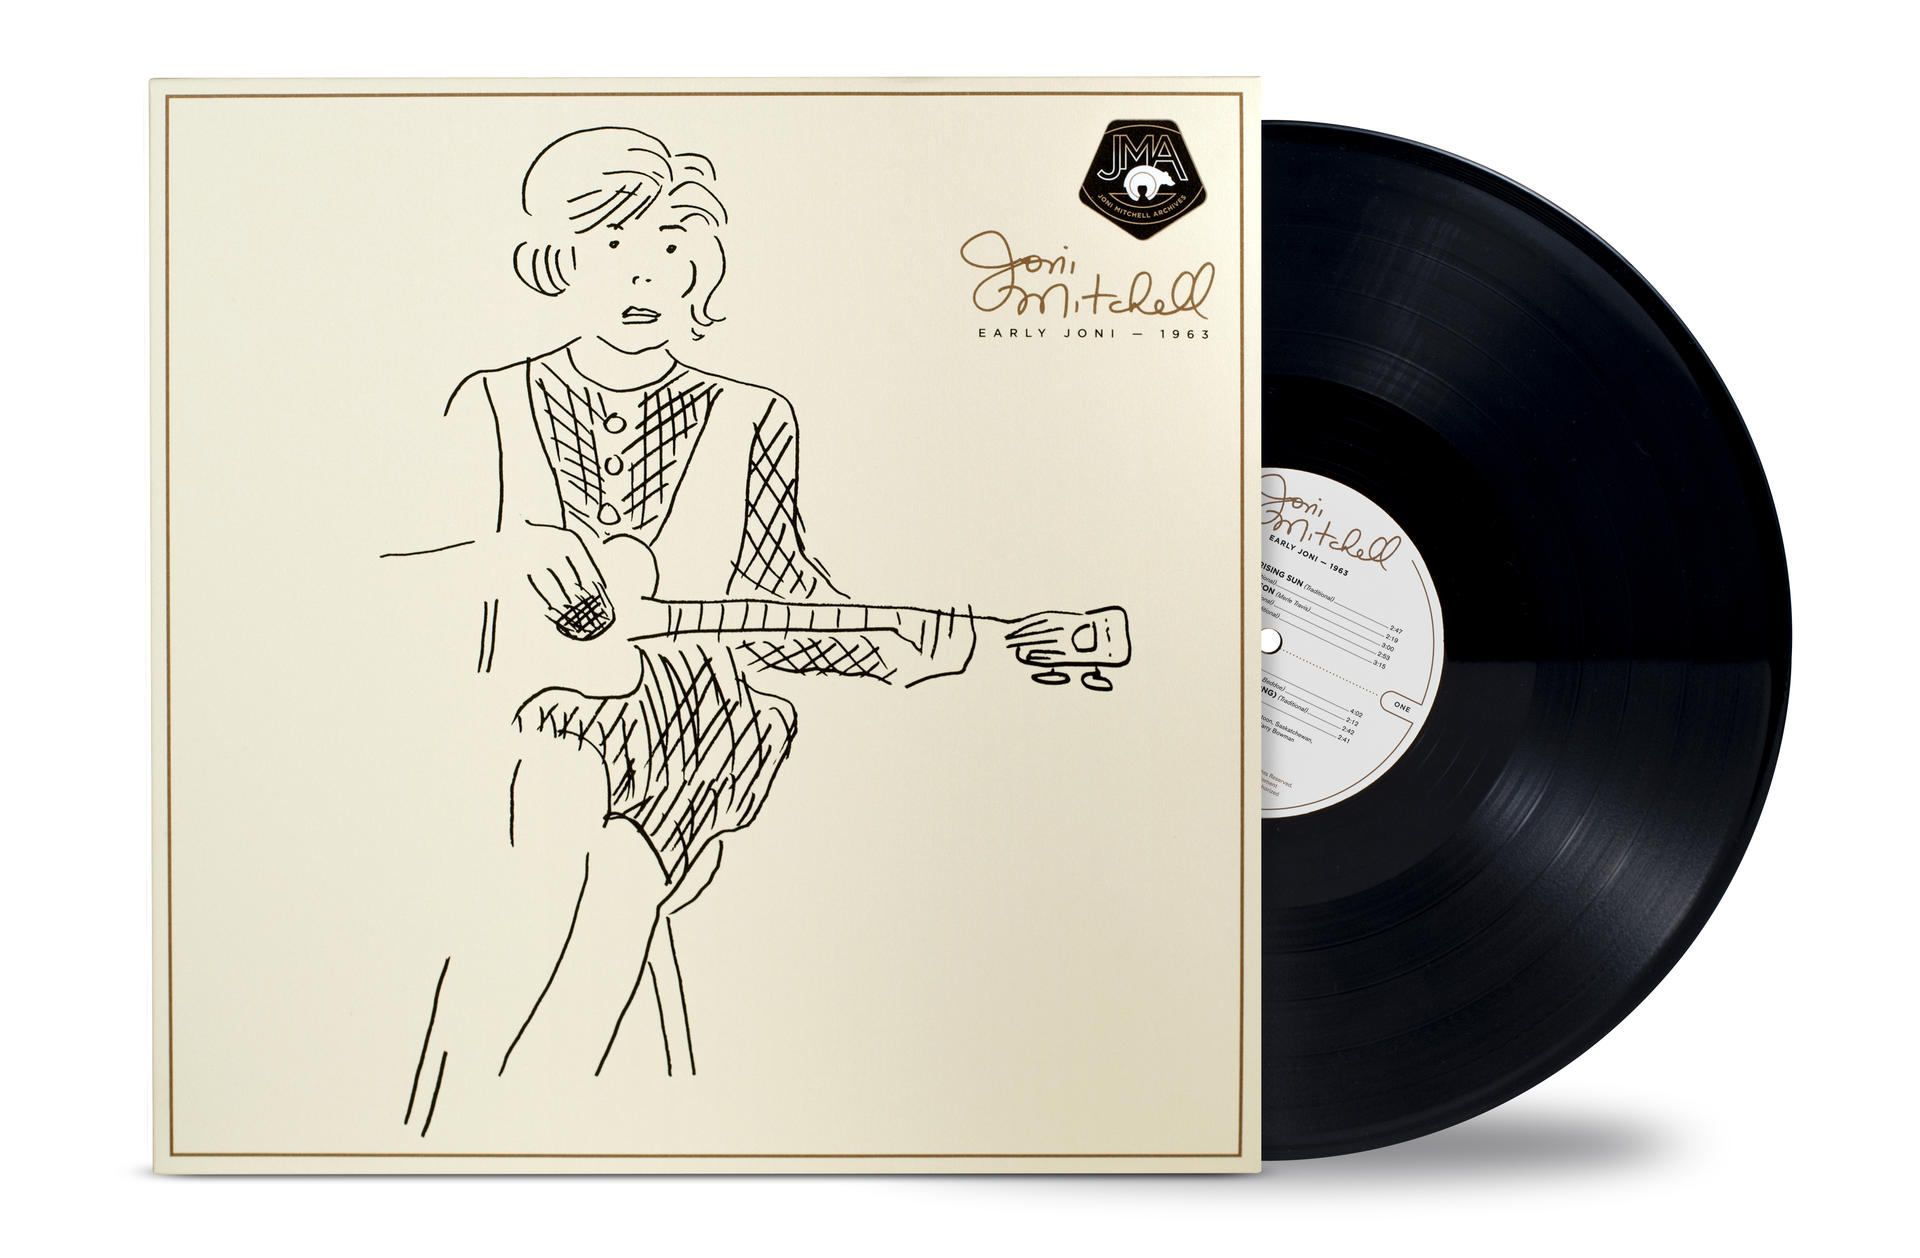 - EARLY (Vinyl) Mitchell - 1963 - Joni JONI